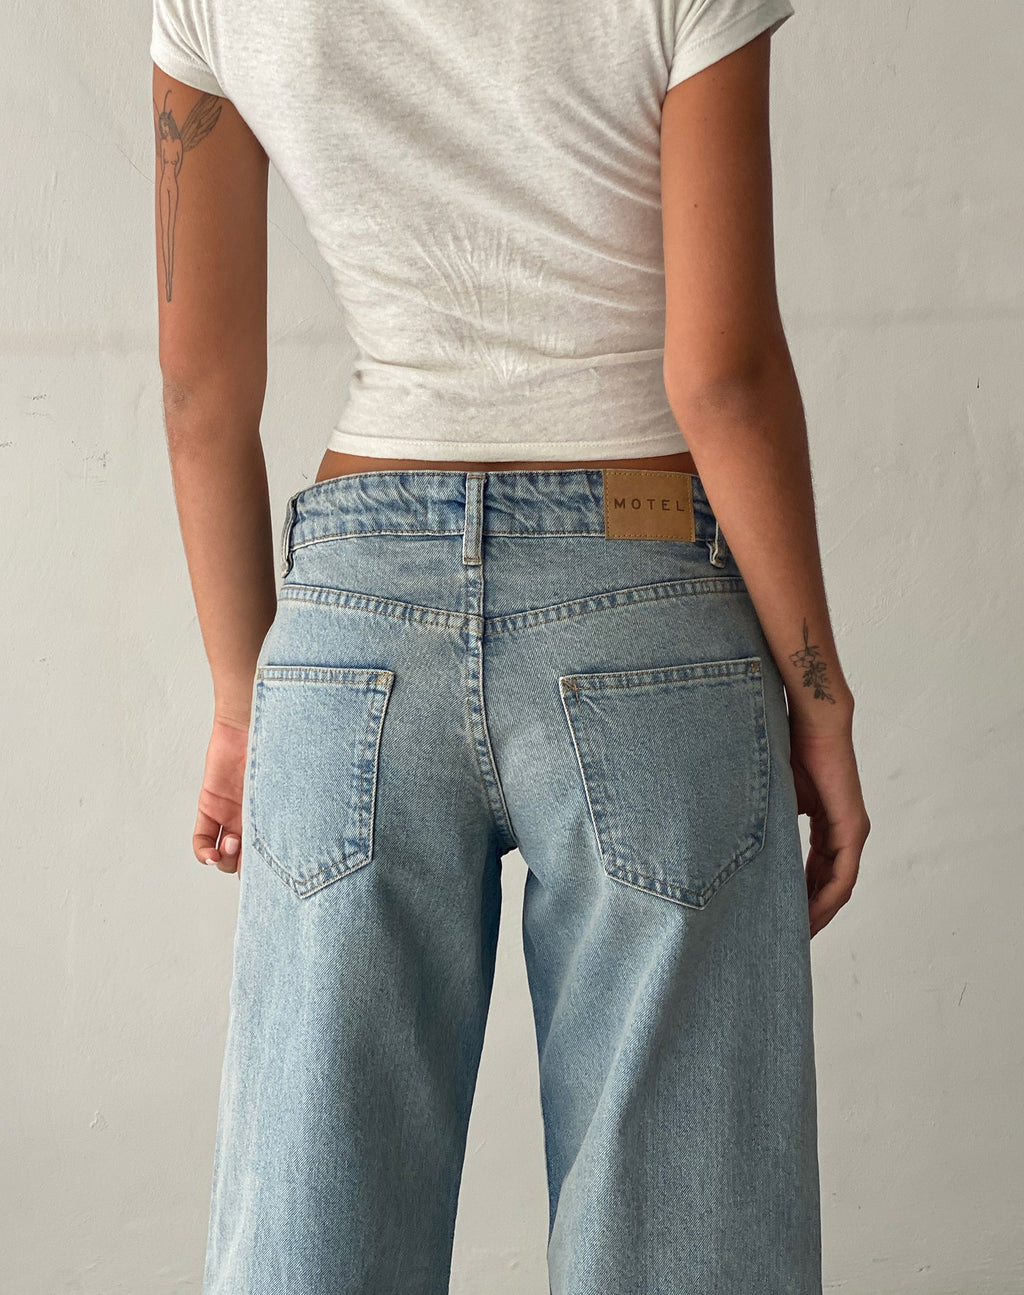 Jeans parallèles taille basse, blanchiment vintage